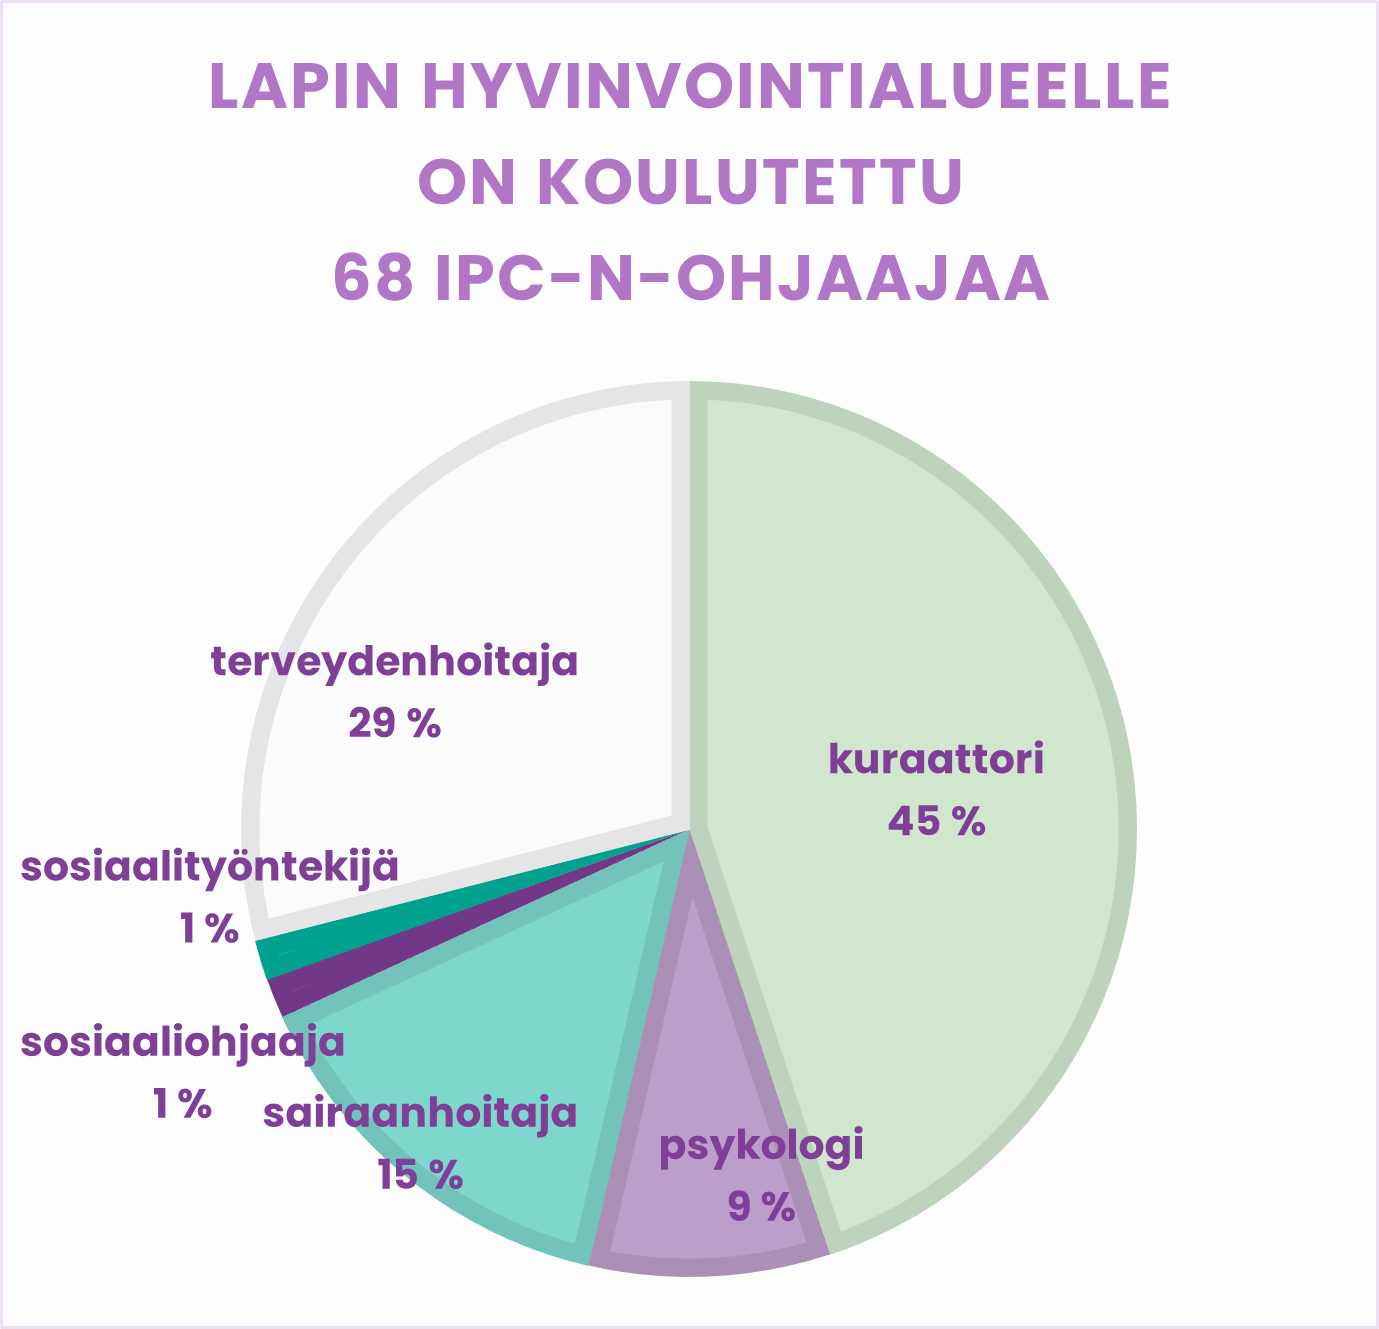 Piirakkadiagrammi Lapin hyvinvointialueen IPC-N-ohjaajista. Yhteensä koulutettuja ohjaajia on 68, joista kuraattoreita 45 %, terveydenhoitajia 29 %, sairaanhoitajia 15 %, psykologeja 9 %, sosiaalityöntekijöitä 1 % ja sosiaaliohjaajia 1 %.